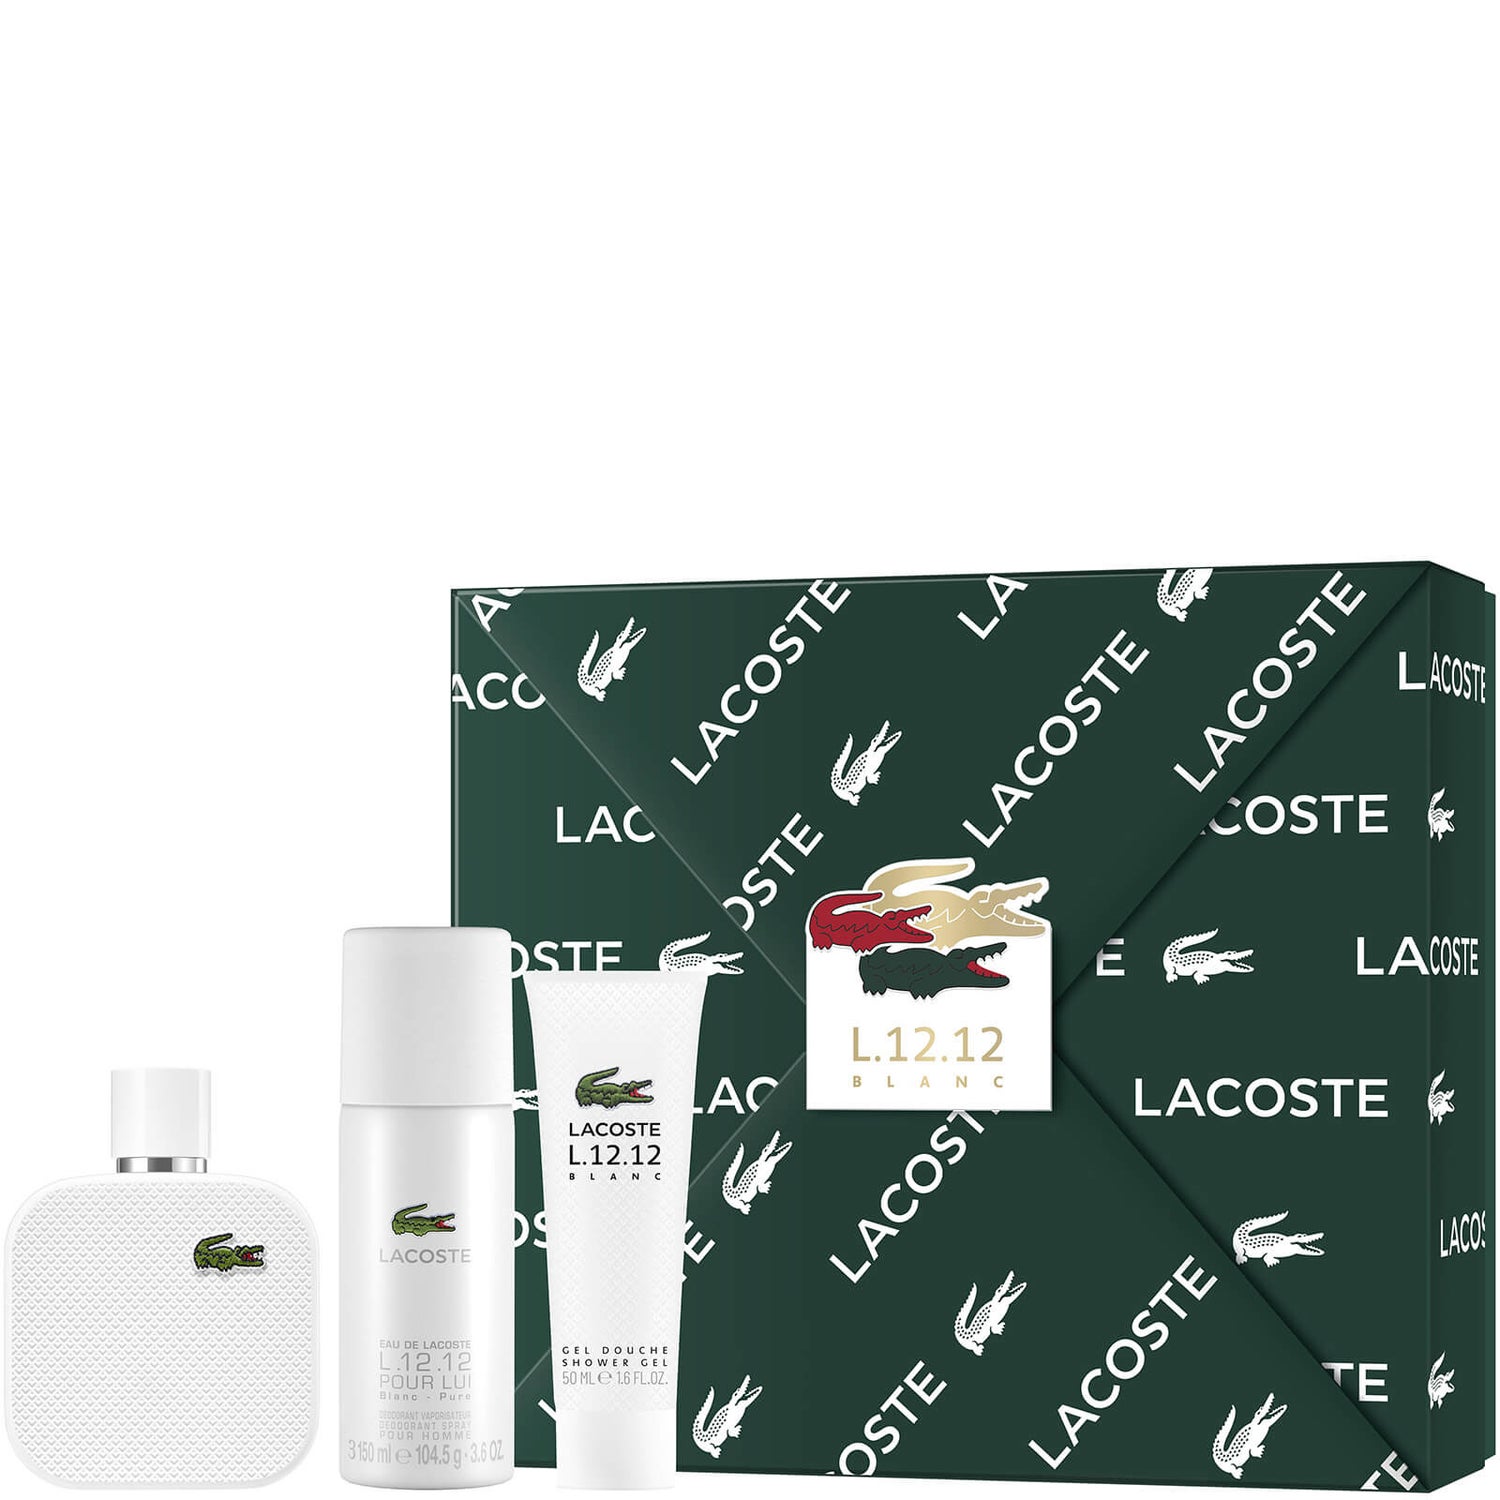 Lacoste L.12.12 Blanc For Him Eau De Toilette 100ml ギフトセット